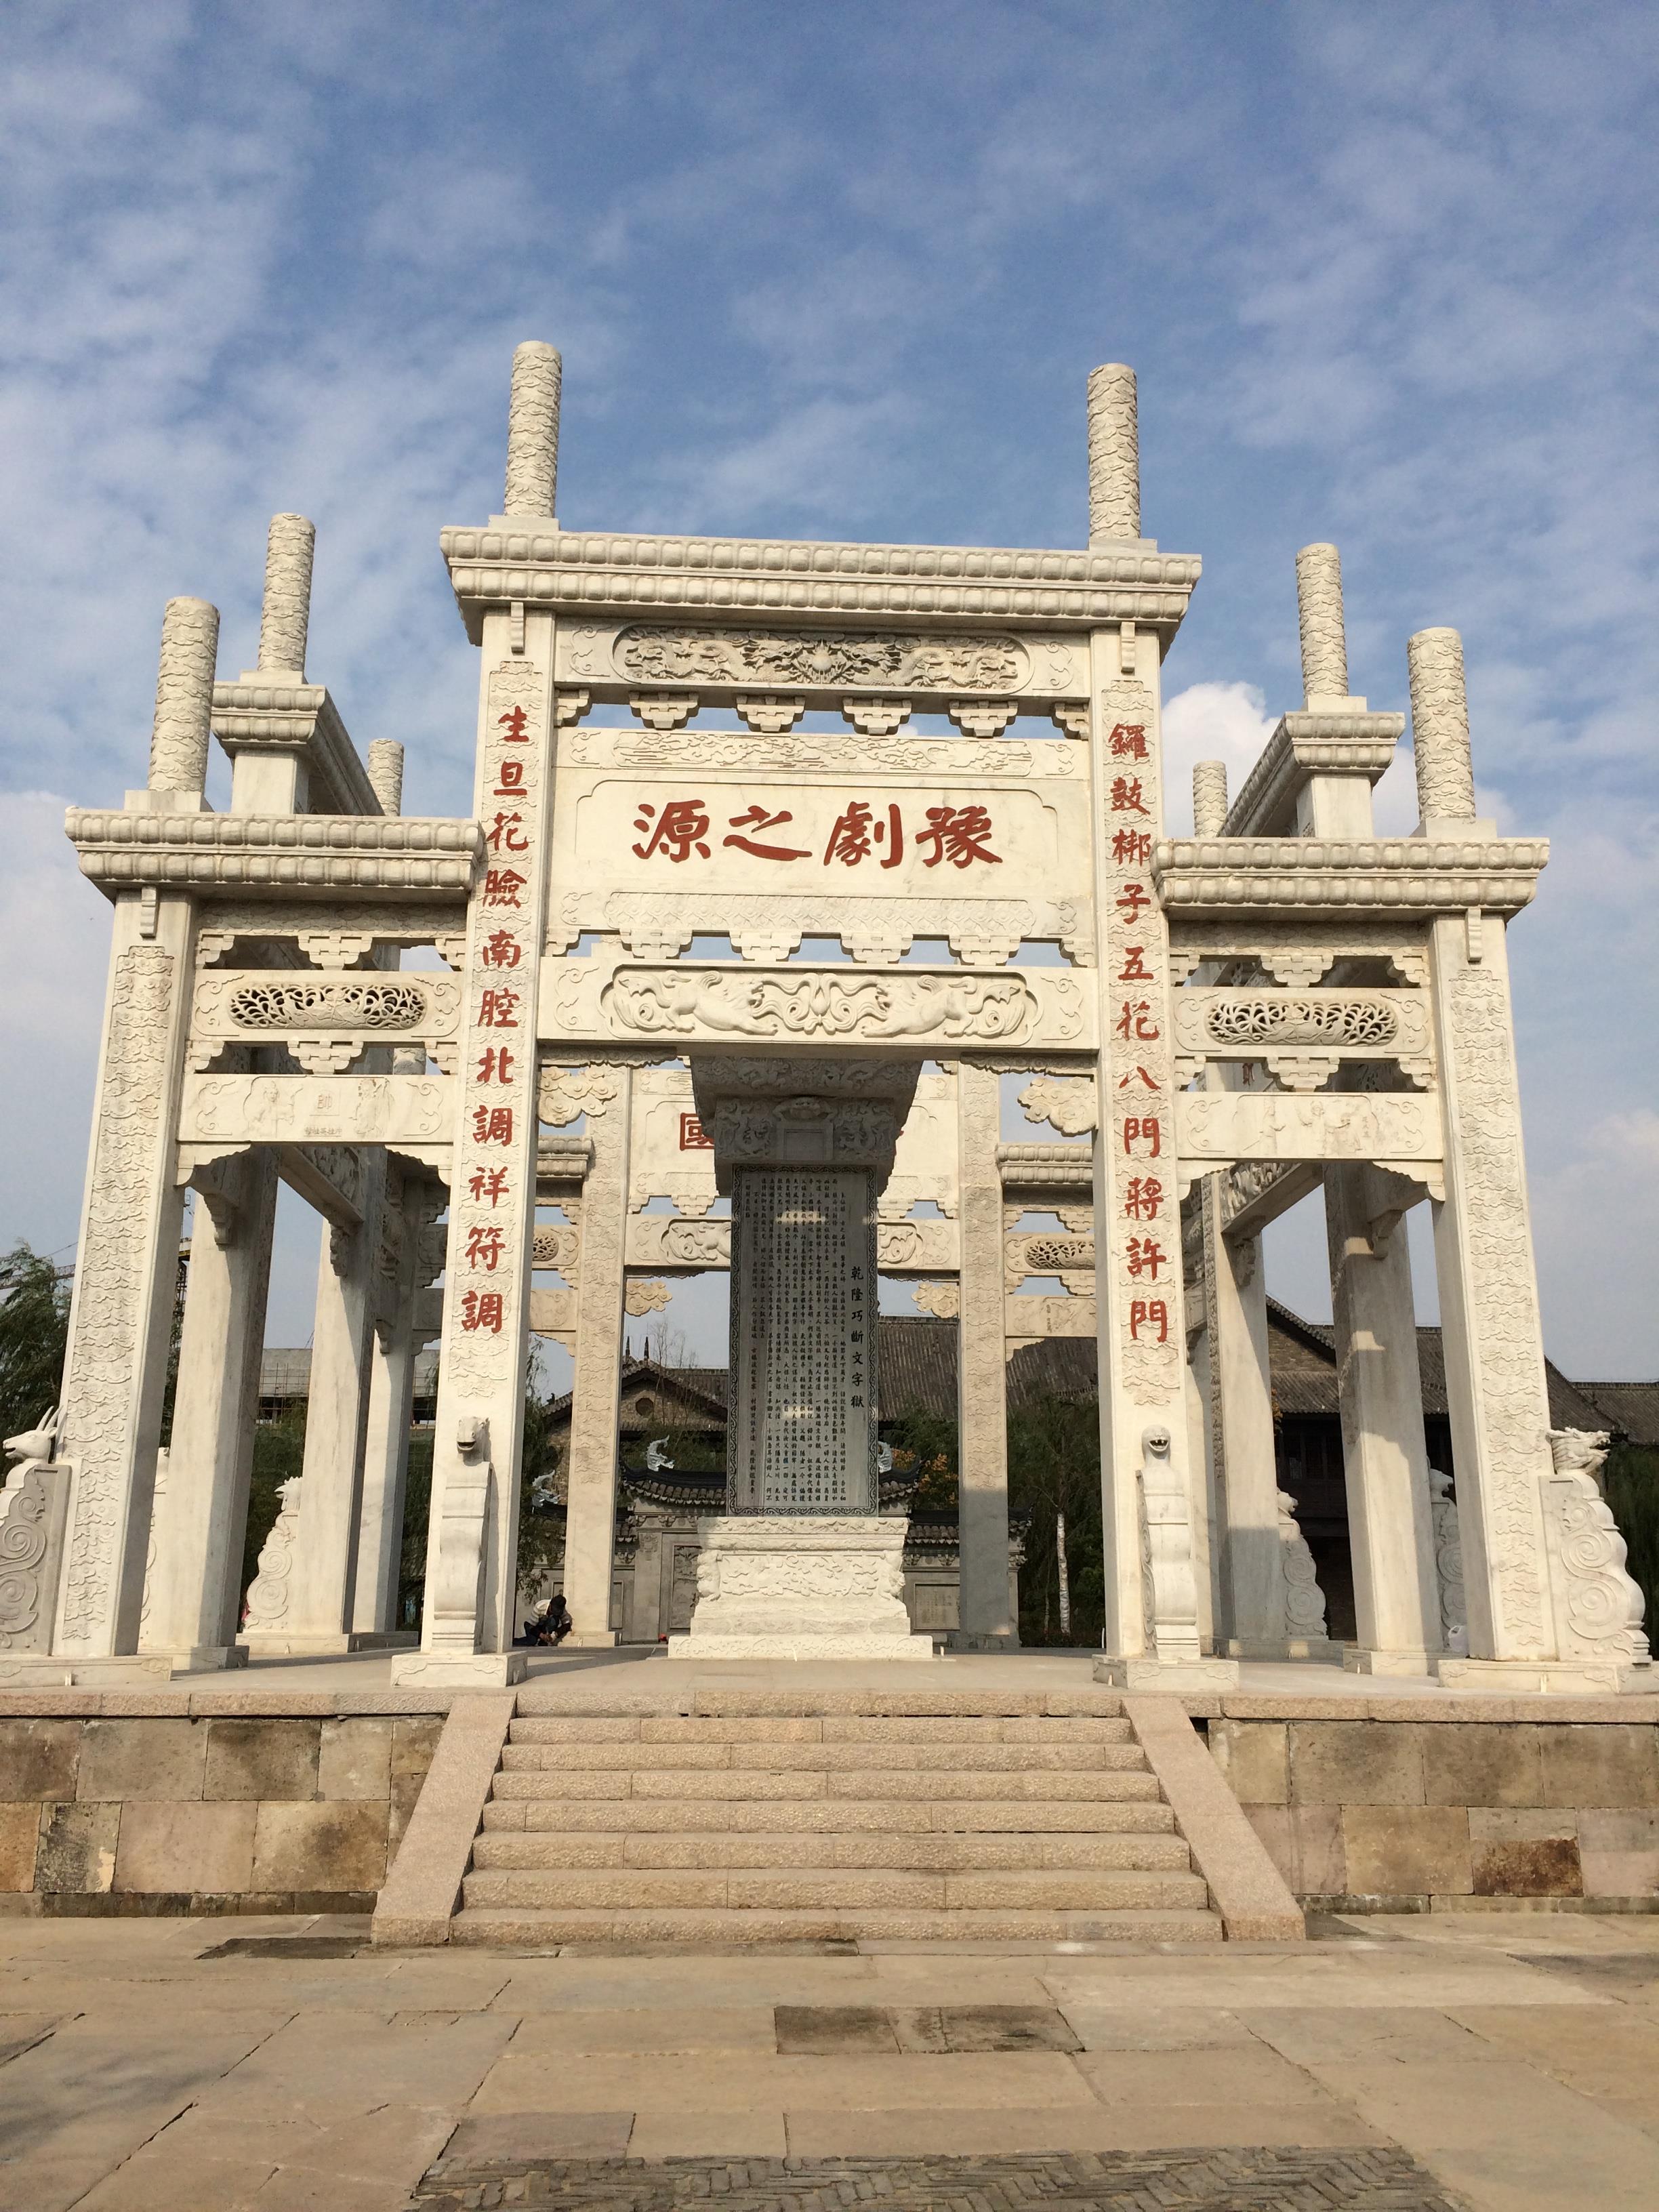 因为朱仙镇曾是中国四大名镇之一,所以到开封决定要去这里看看